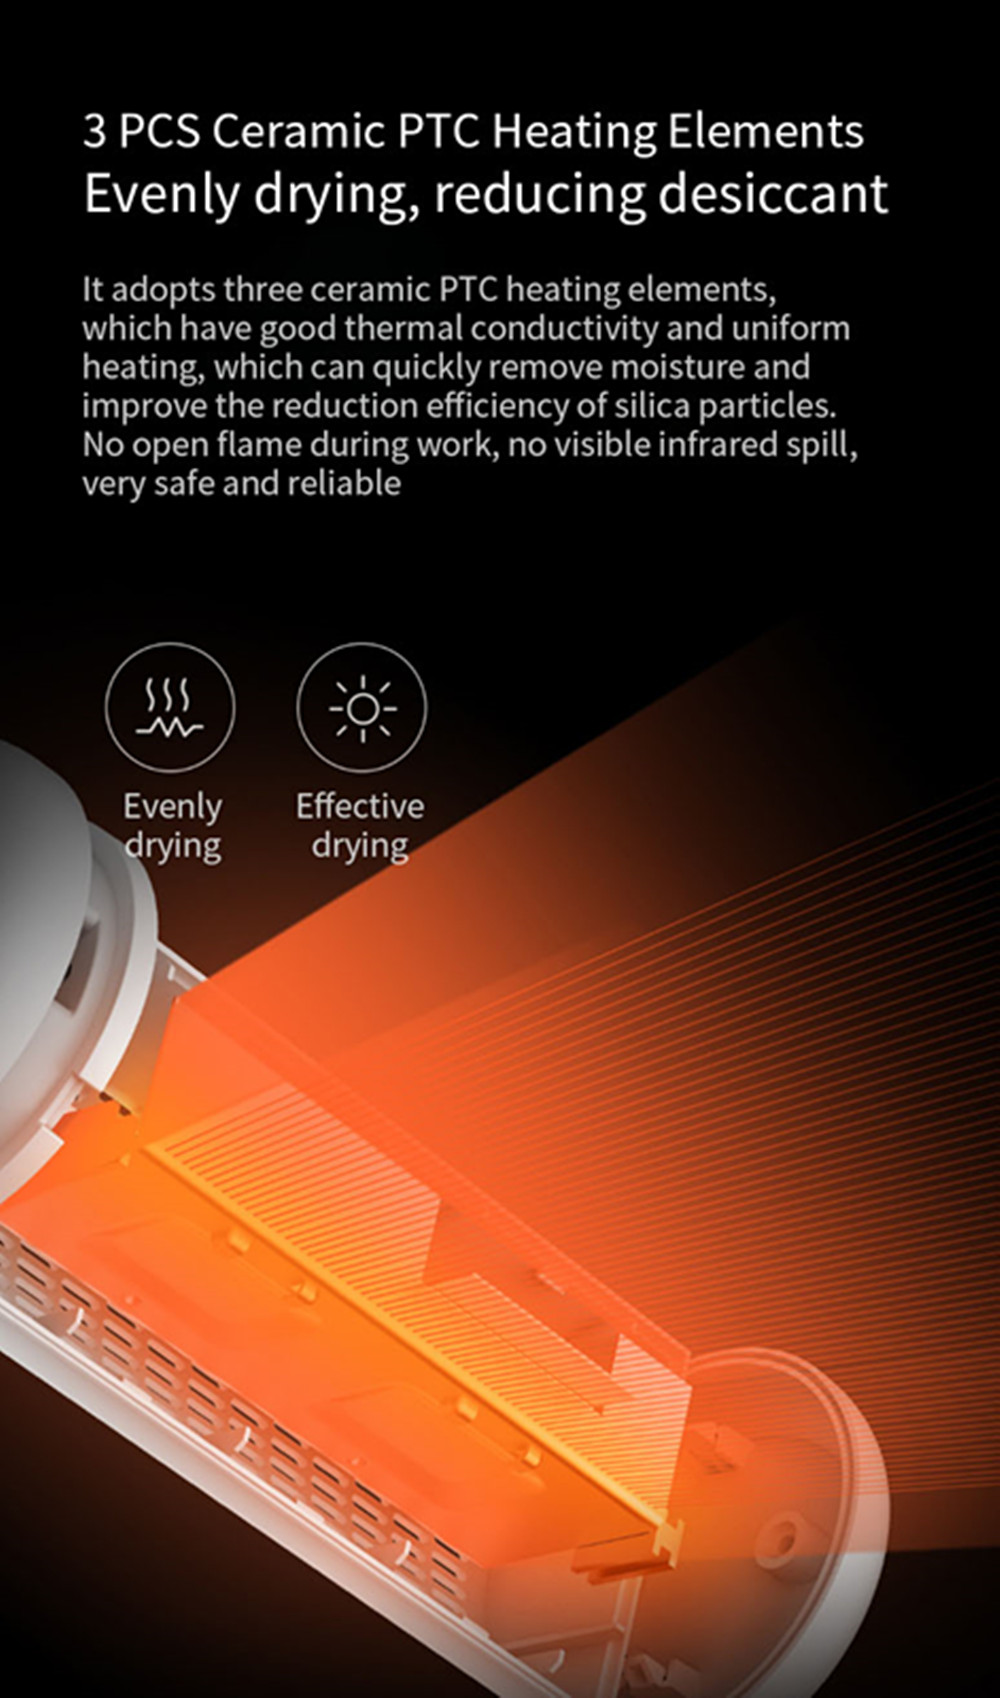 Deerma Mini Dehumidifier Cycle Air Moisture Dryer From Xiaomi Youpin